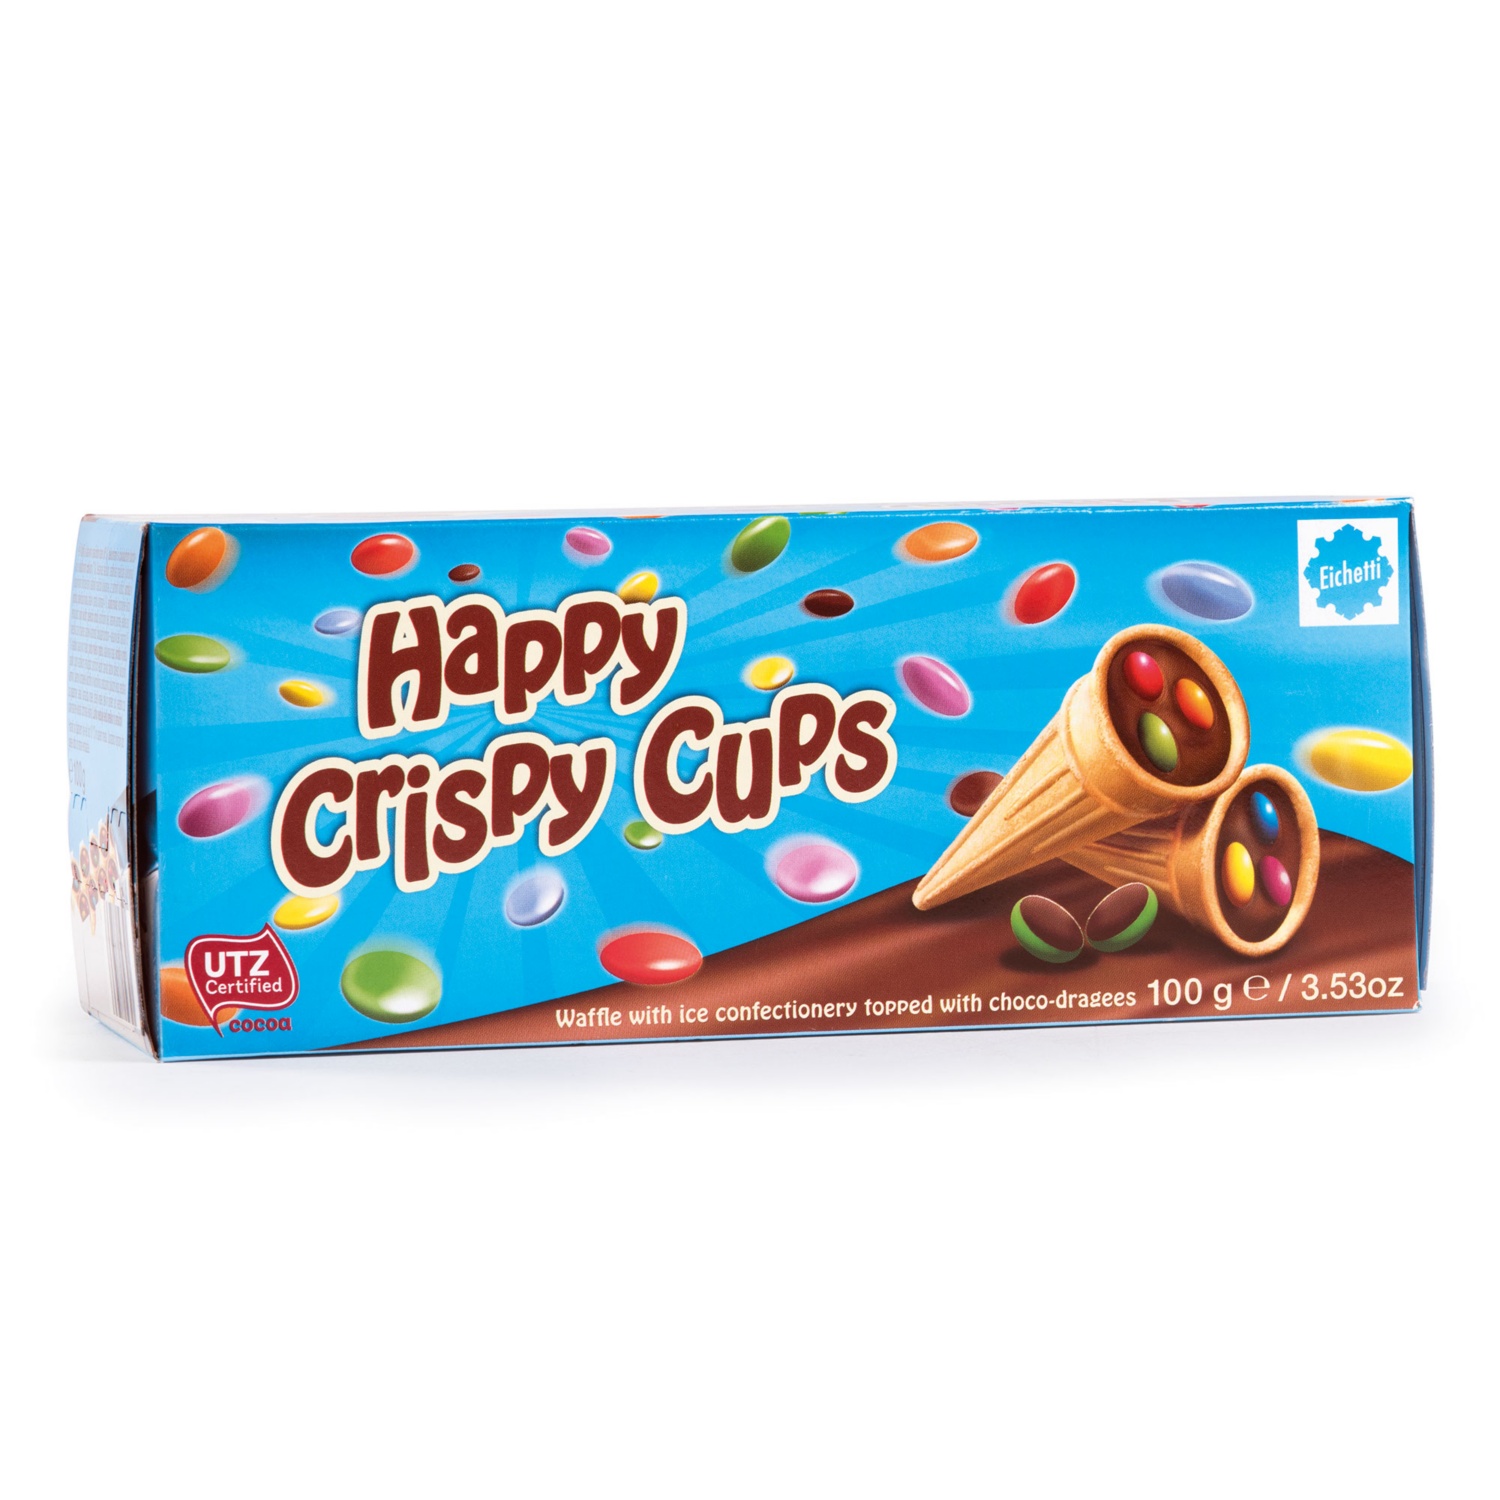 EICHETTI Happy Crispy Cups, Schokolinsen